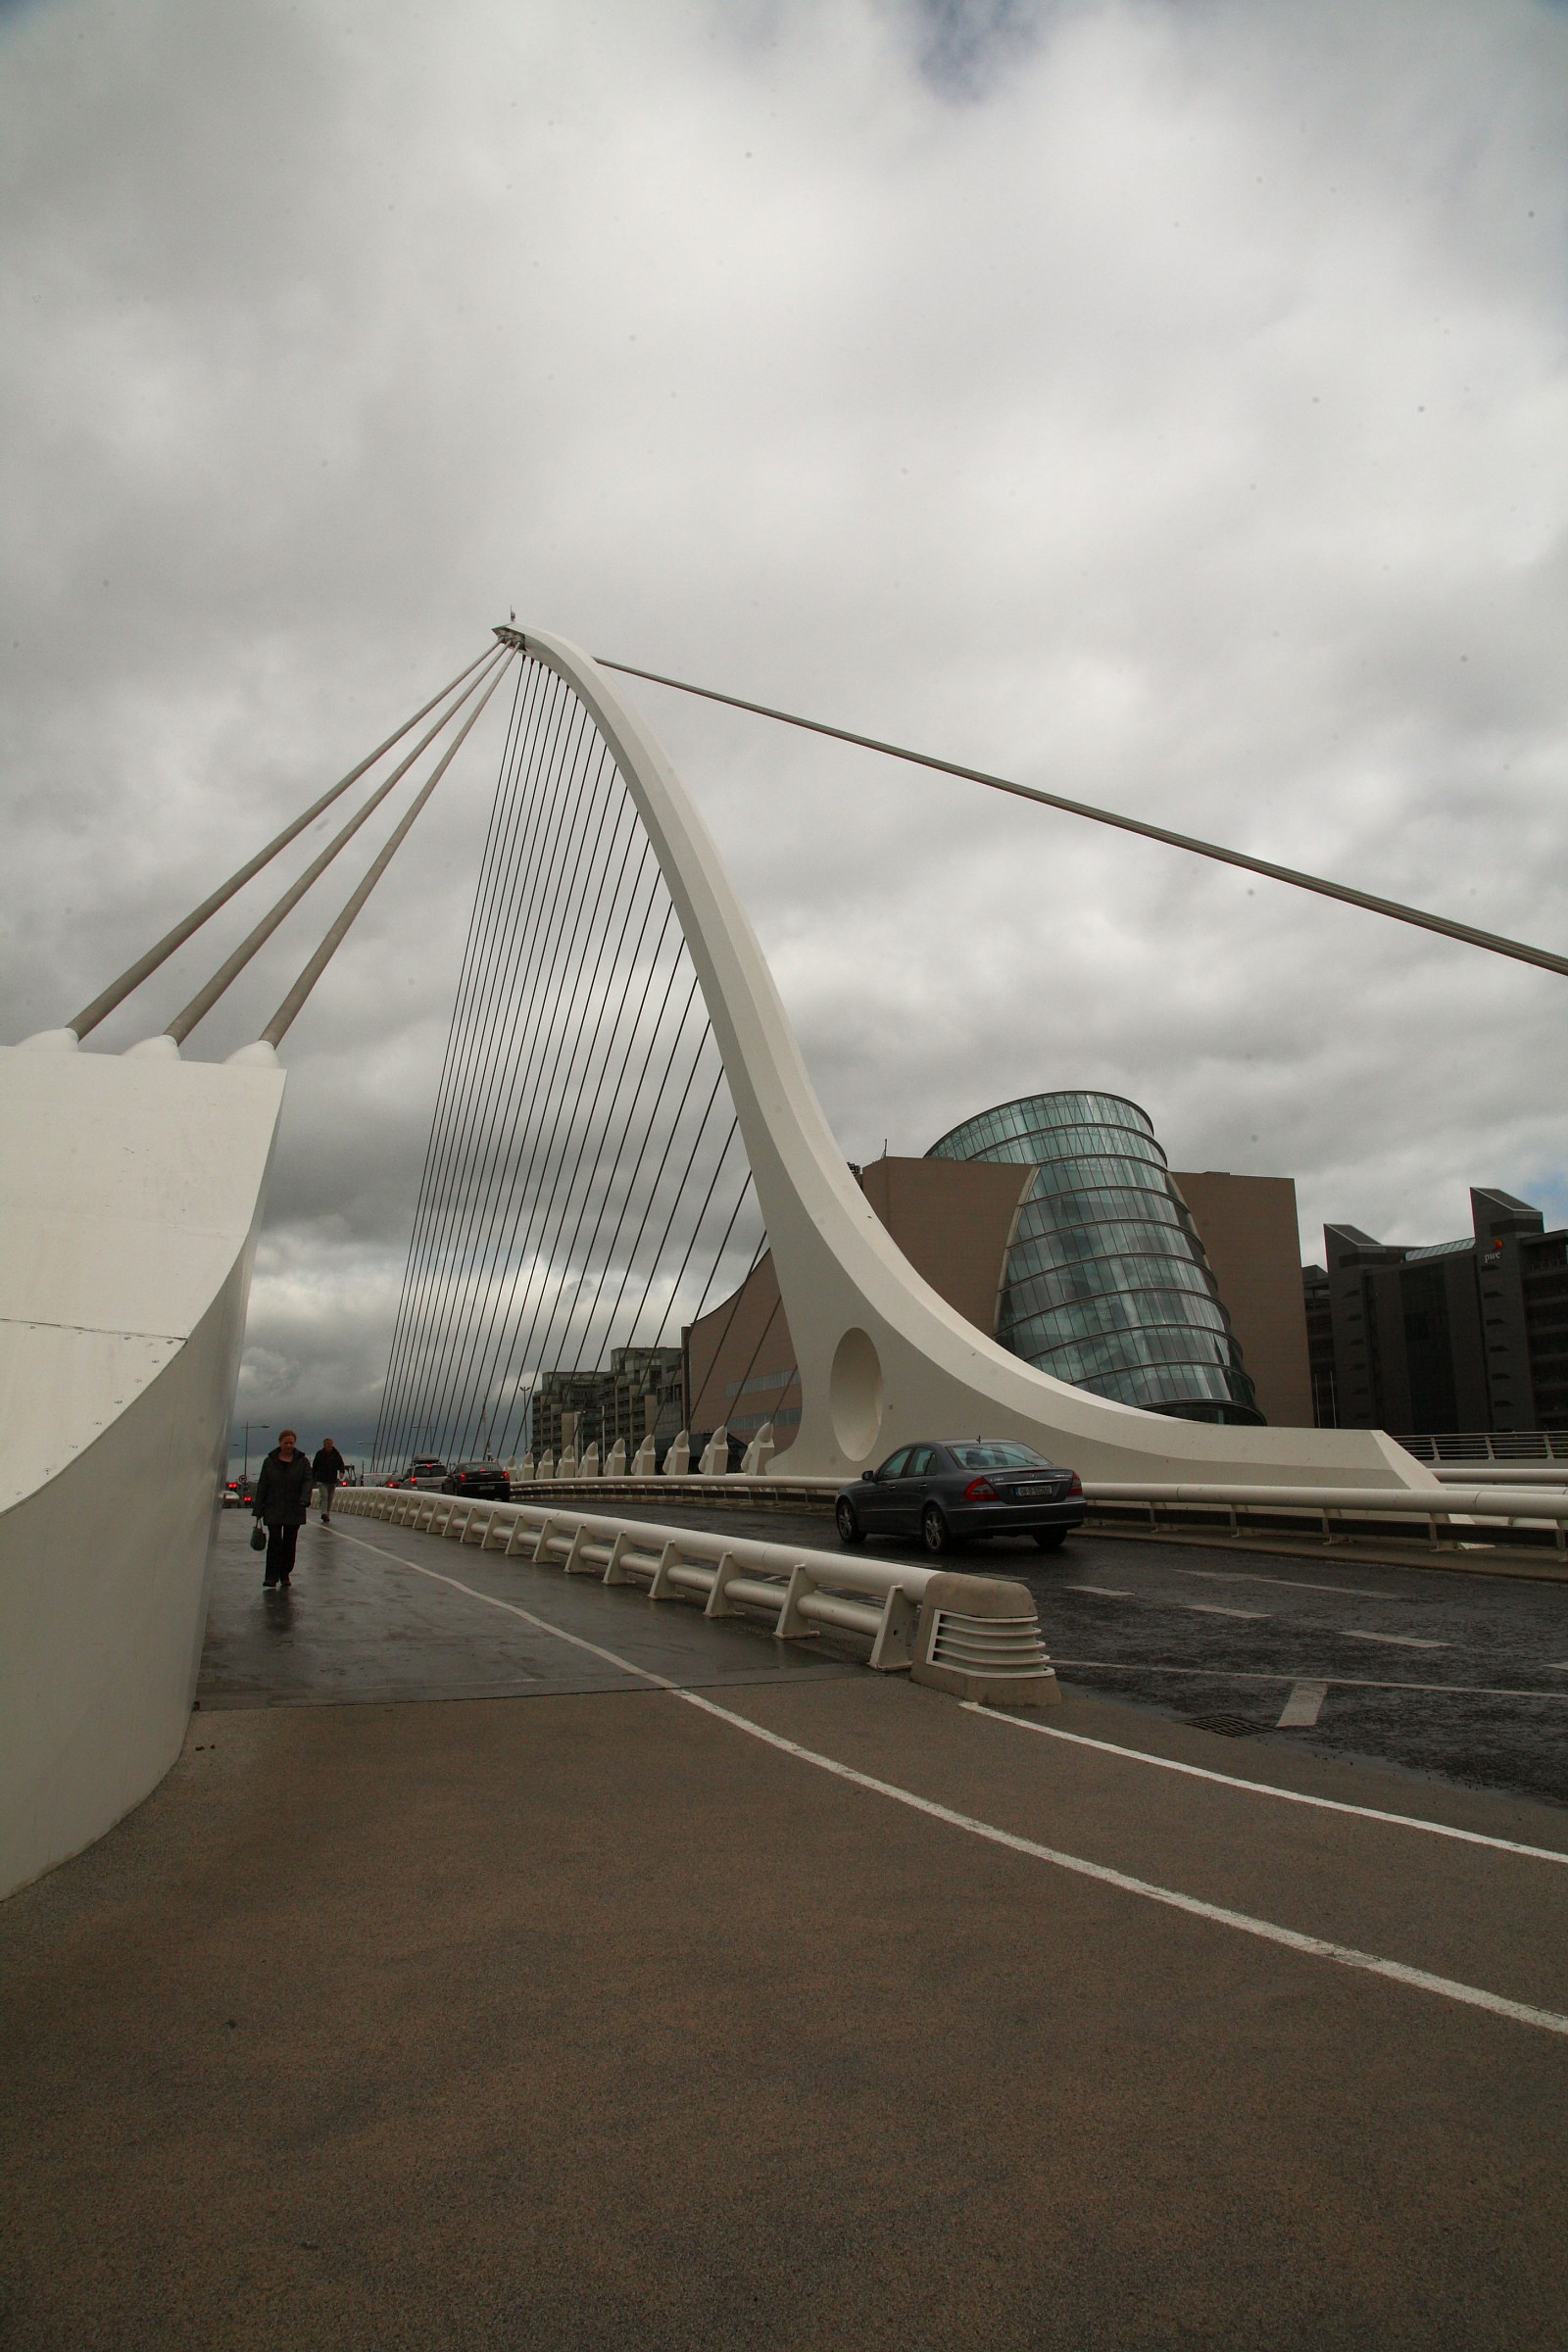 The harp of Calatrava - Dublin...